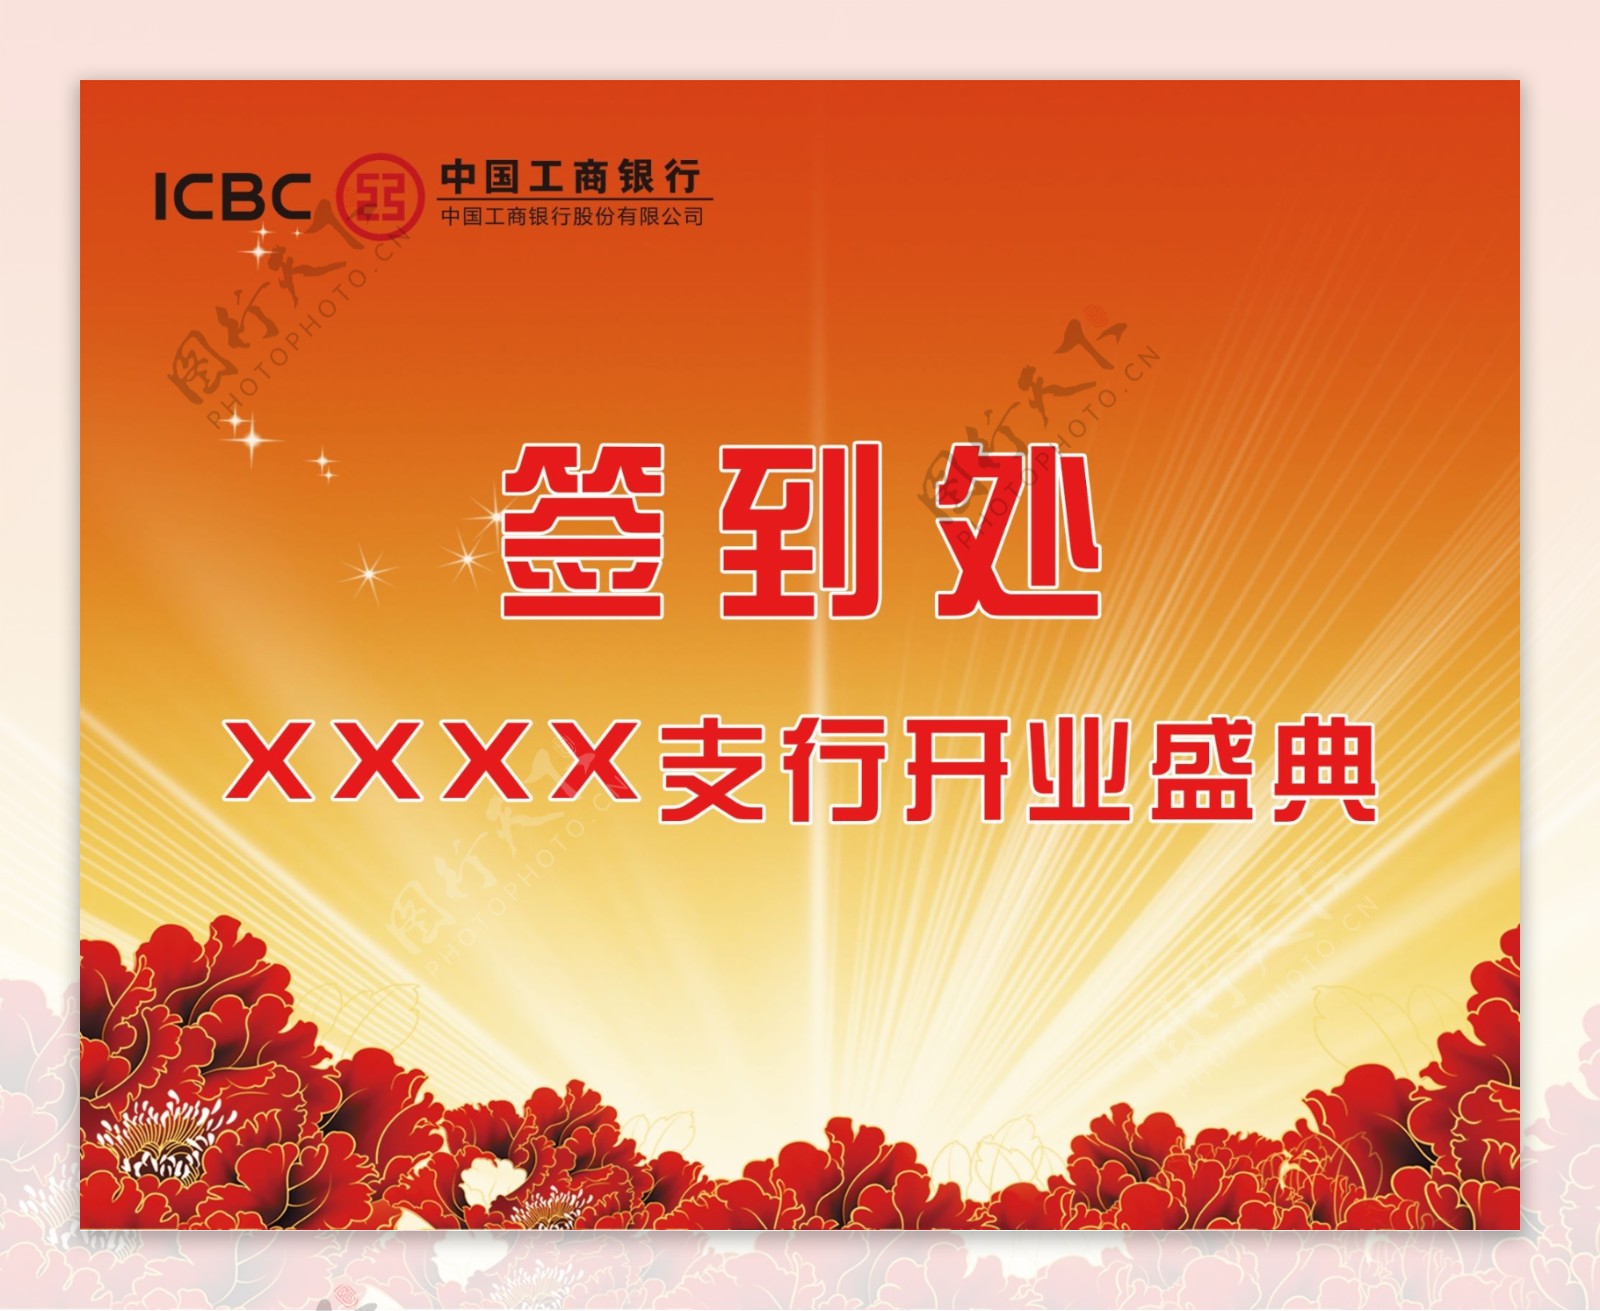 中国工商银行股份有限公司XXXX支行开业盛典签到处